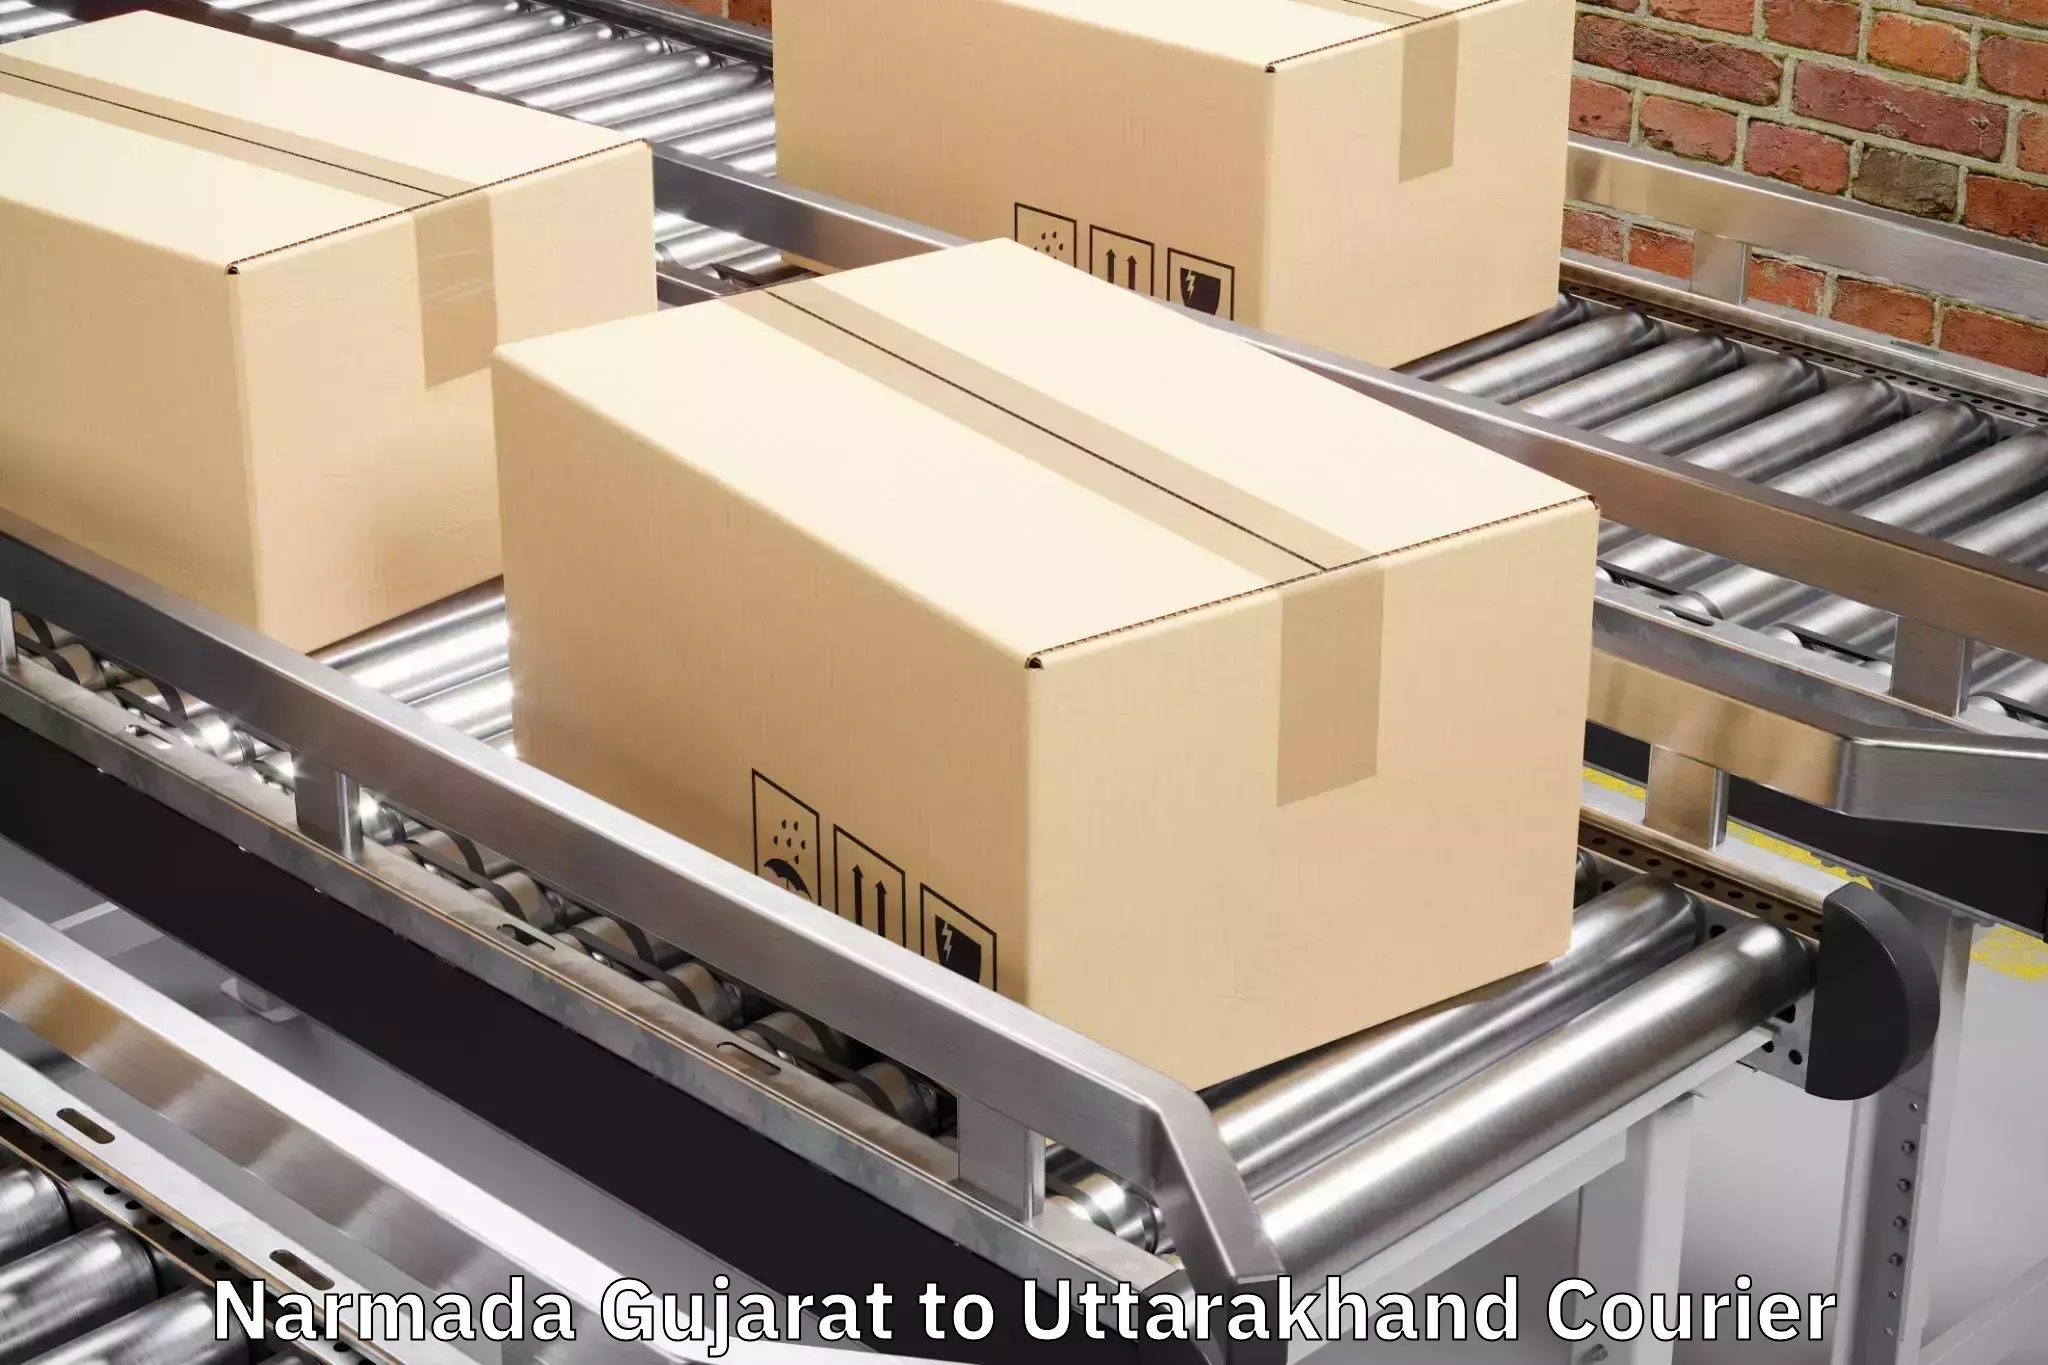 Luggage transport consultancy Narmada Gujarat to Uttarkashi